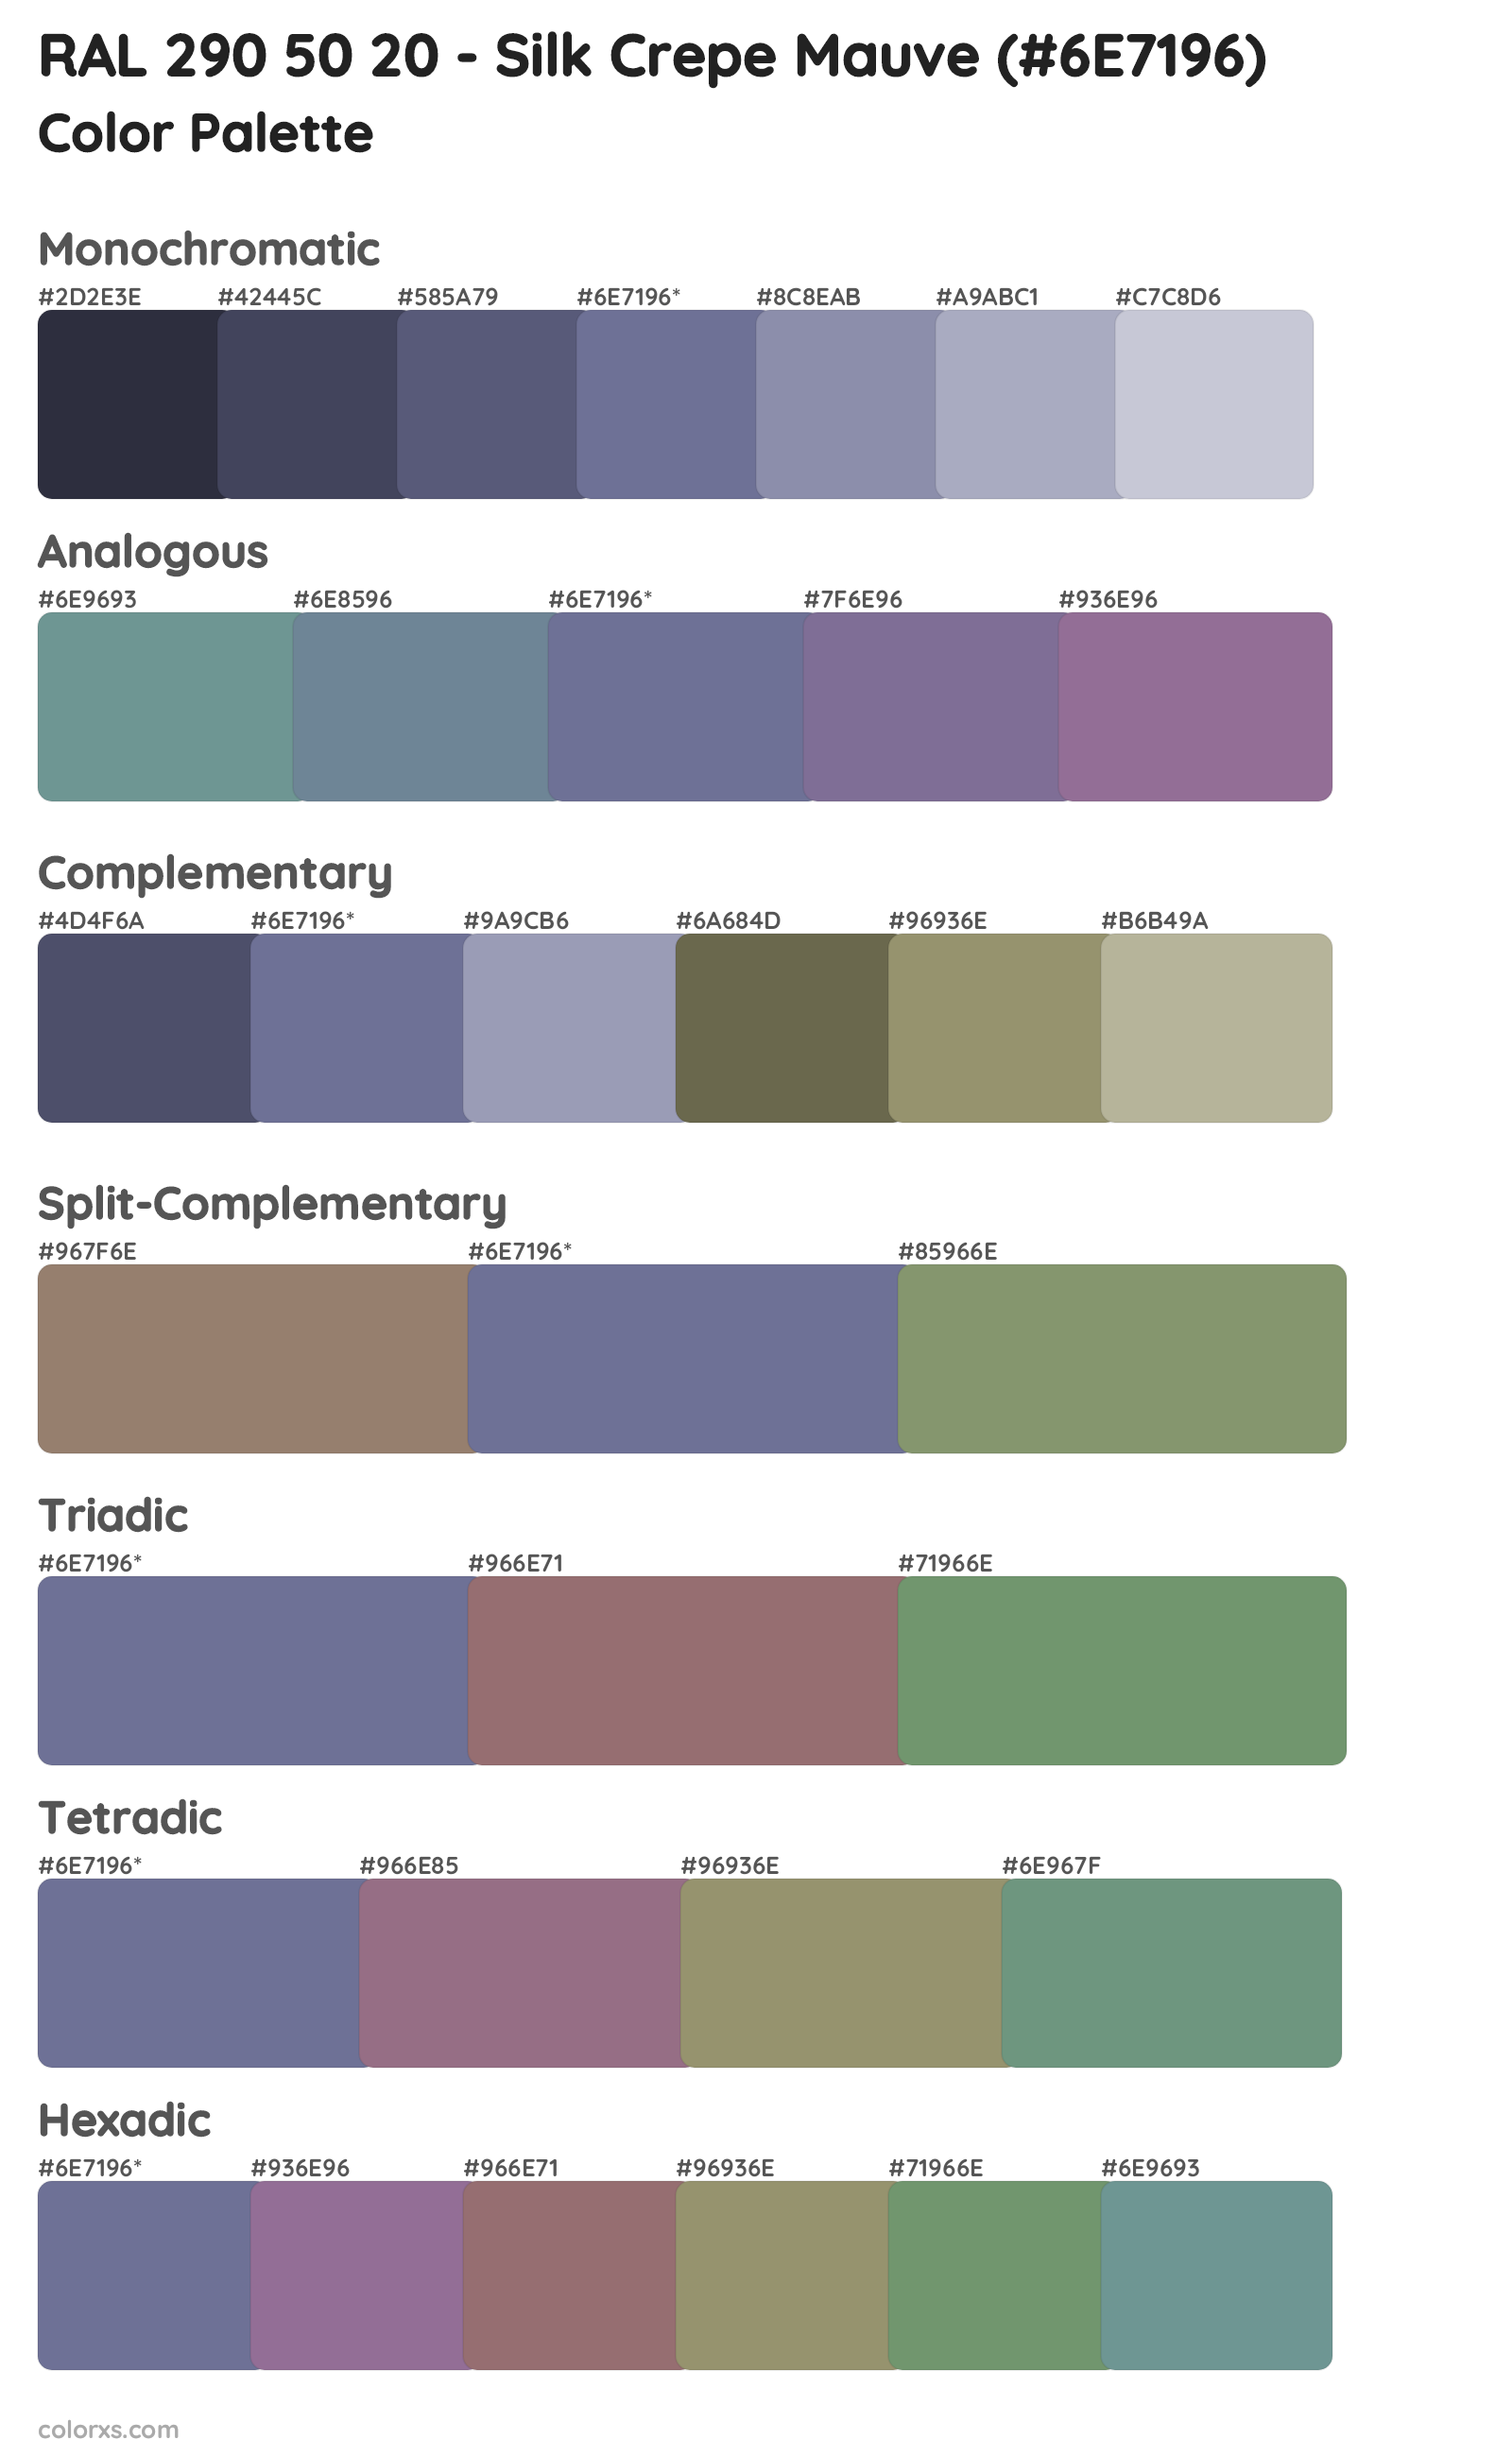 RAL 290 50 20 - Silk Crepe Mauve Color Scheme Palettes